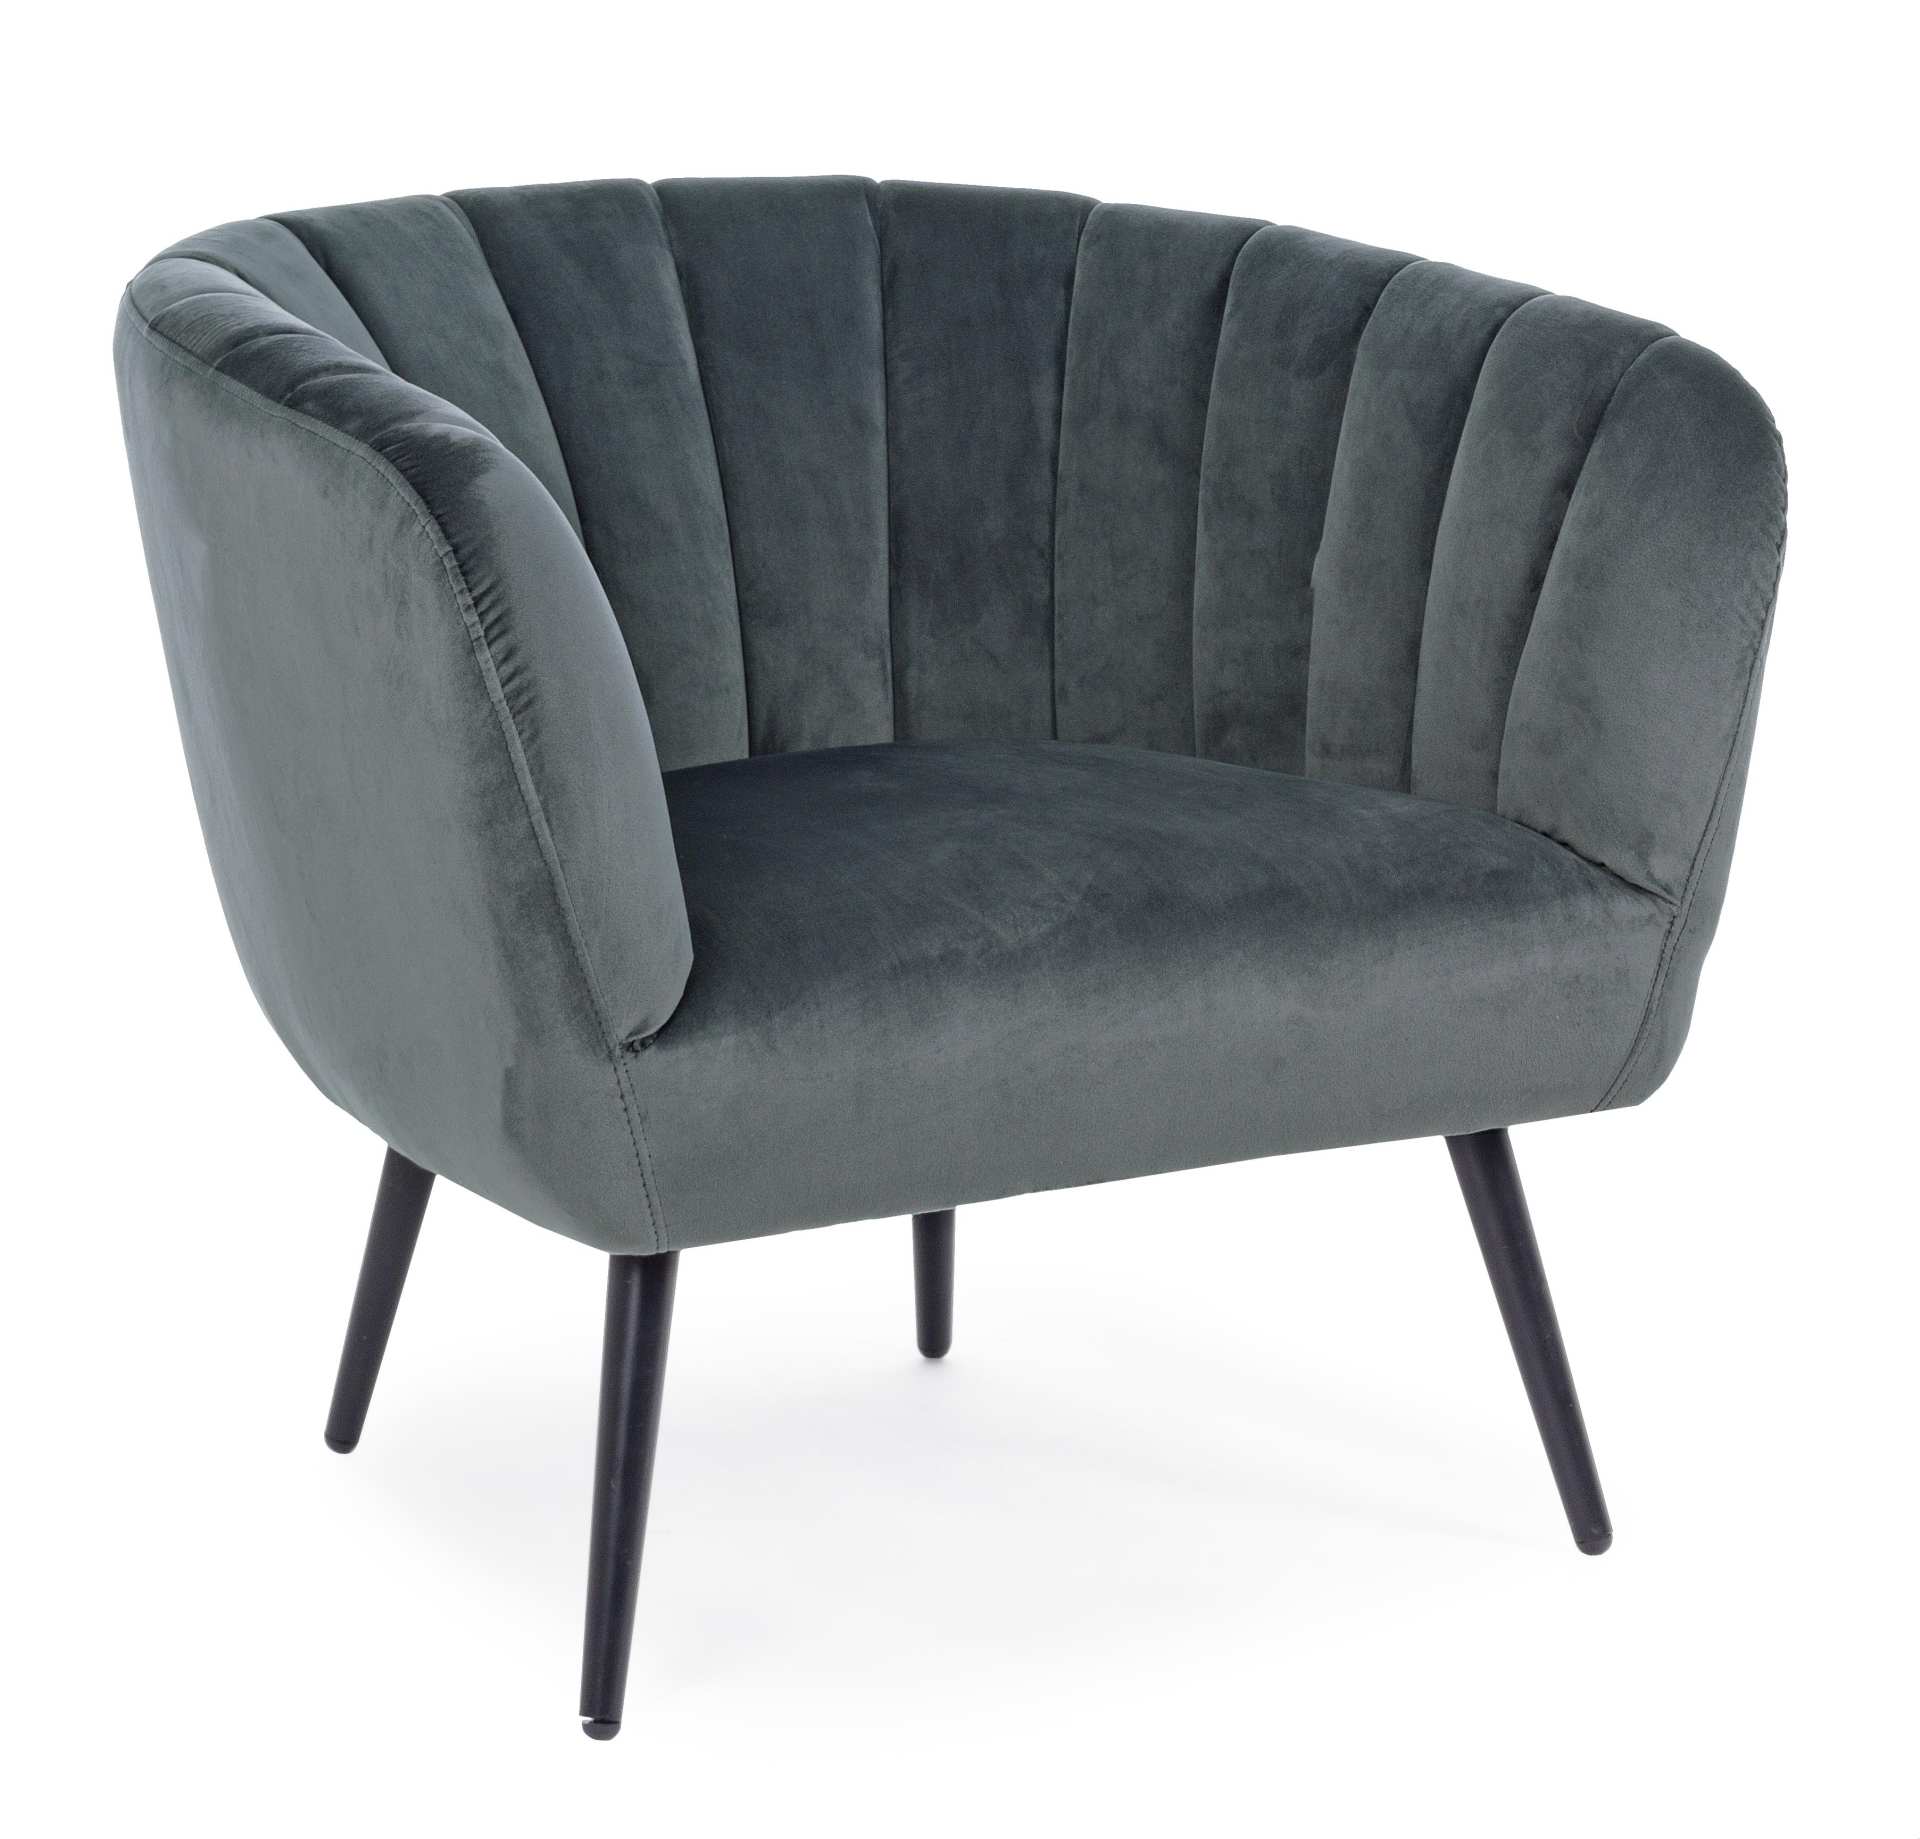 Der Sessel Avril überzeugt mit seinem modernen Design. Gefertigt wurde er aus Stoff in Samt-Optik, welcher einen grauen Farbton besitzt. Das Gestell ist aus Metall und hat eine schwarze Farbe. Der Sessel besitzt eine Sitzhöhe von 43 cm. Die Breite beträgt